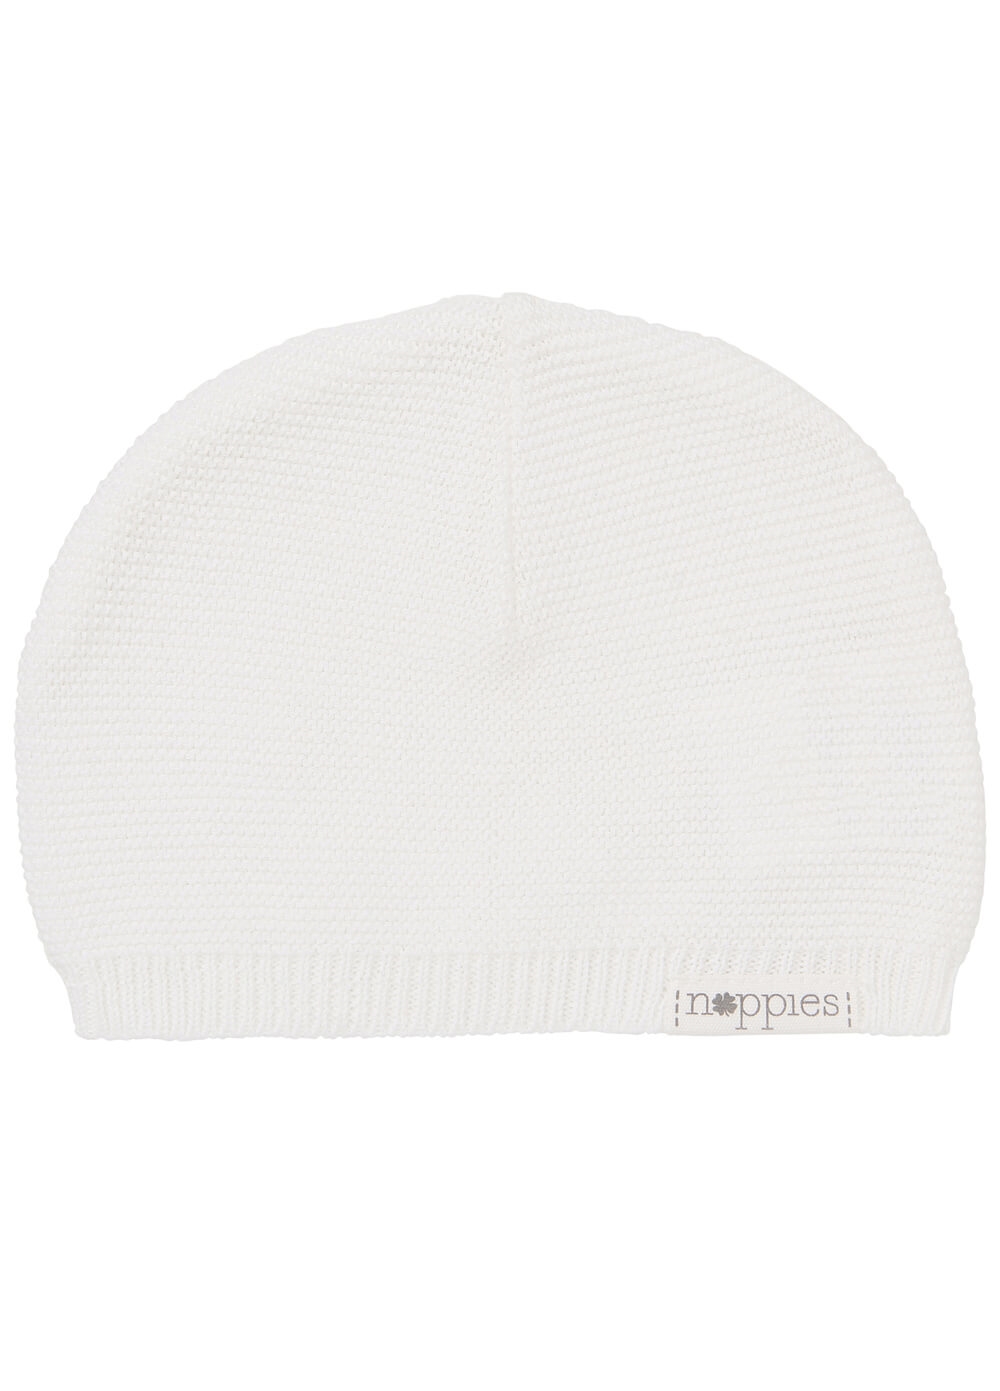 Rosita Organic Cotton Knit Newborn Hat in White by Noppies Baby